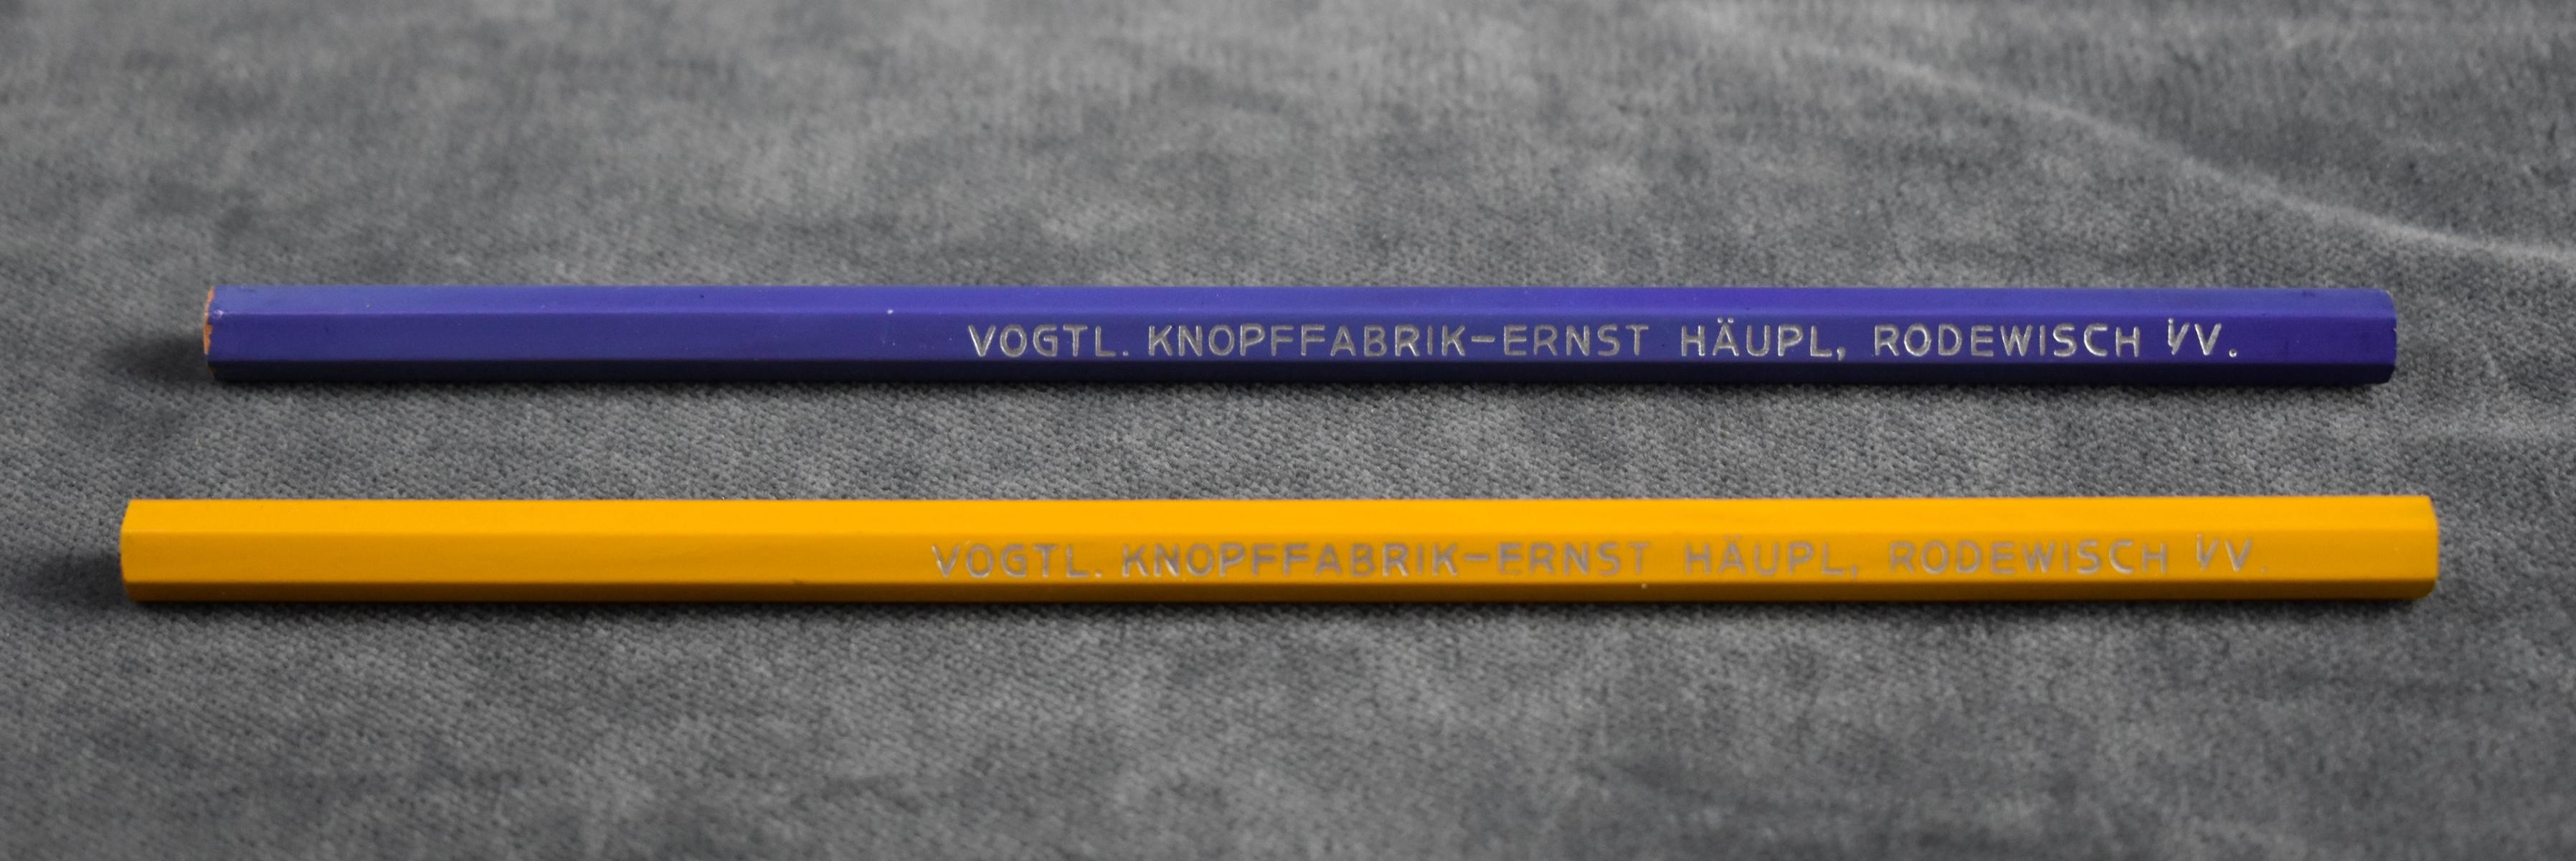 Zwei Bleistifte mit Firmenaufdruck Häupl (Perlmutter- und Heimatmuseum Adorf CC BY-NC-SA)